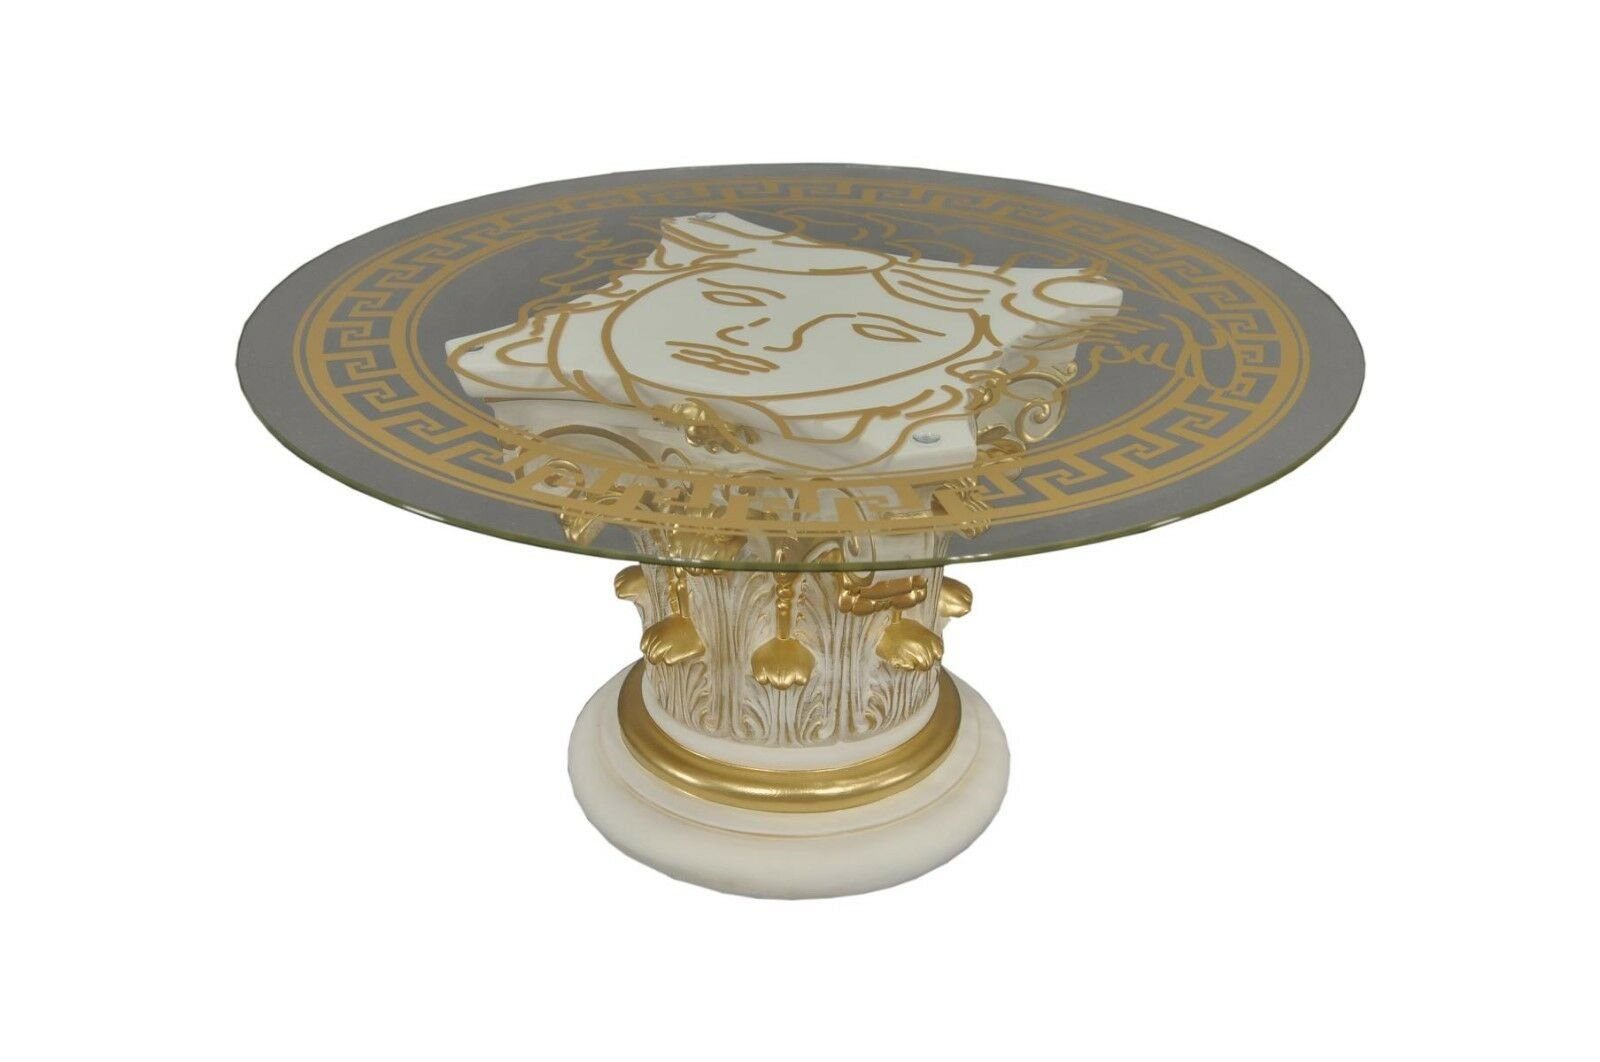 Steinmöbel Wohnzimmertisch Antikes Runder Glastisch Couchtisch Couchtisch Creme Gold Wohndesign